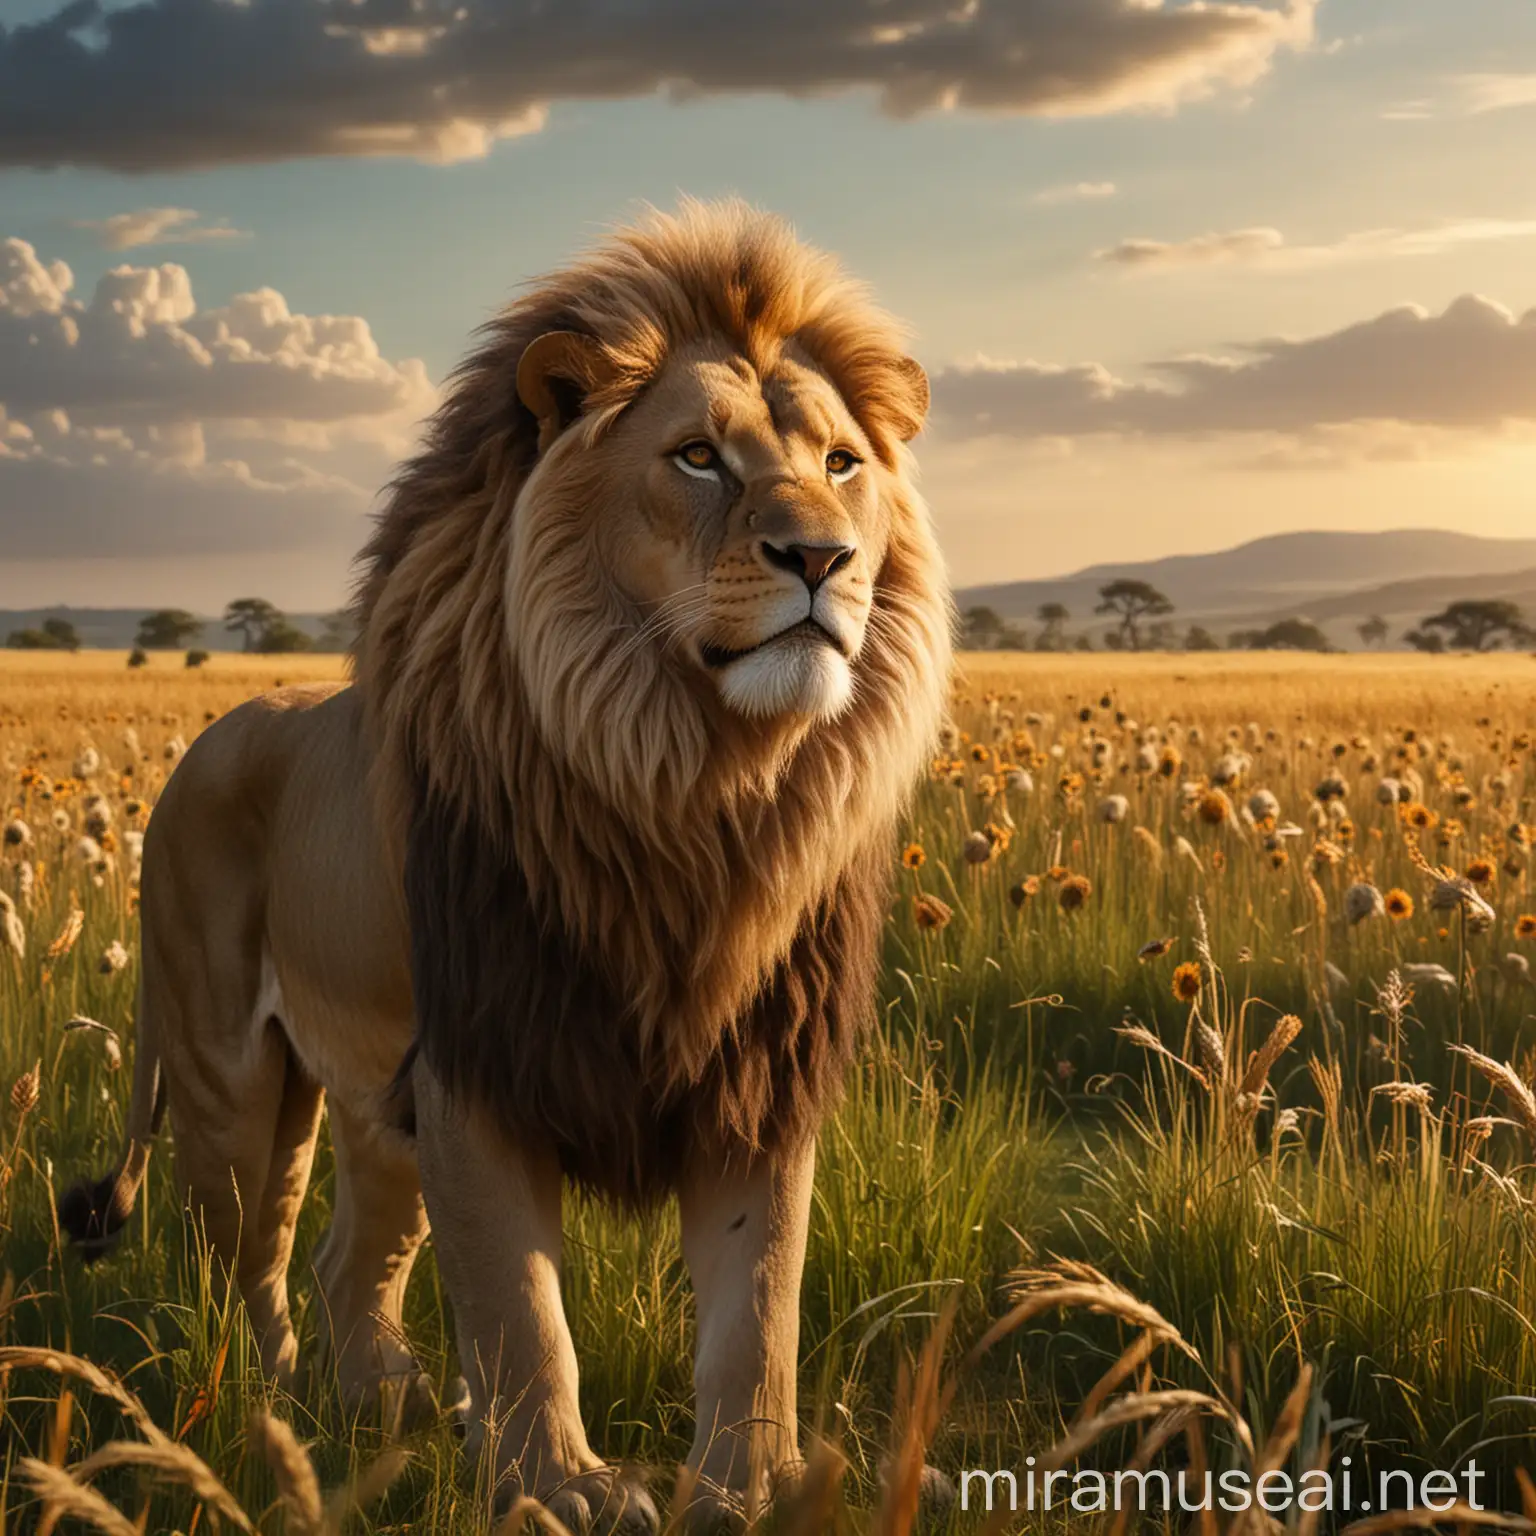 Wise Lion King Roaming Majestic Fields